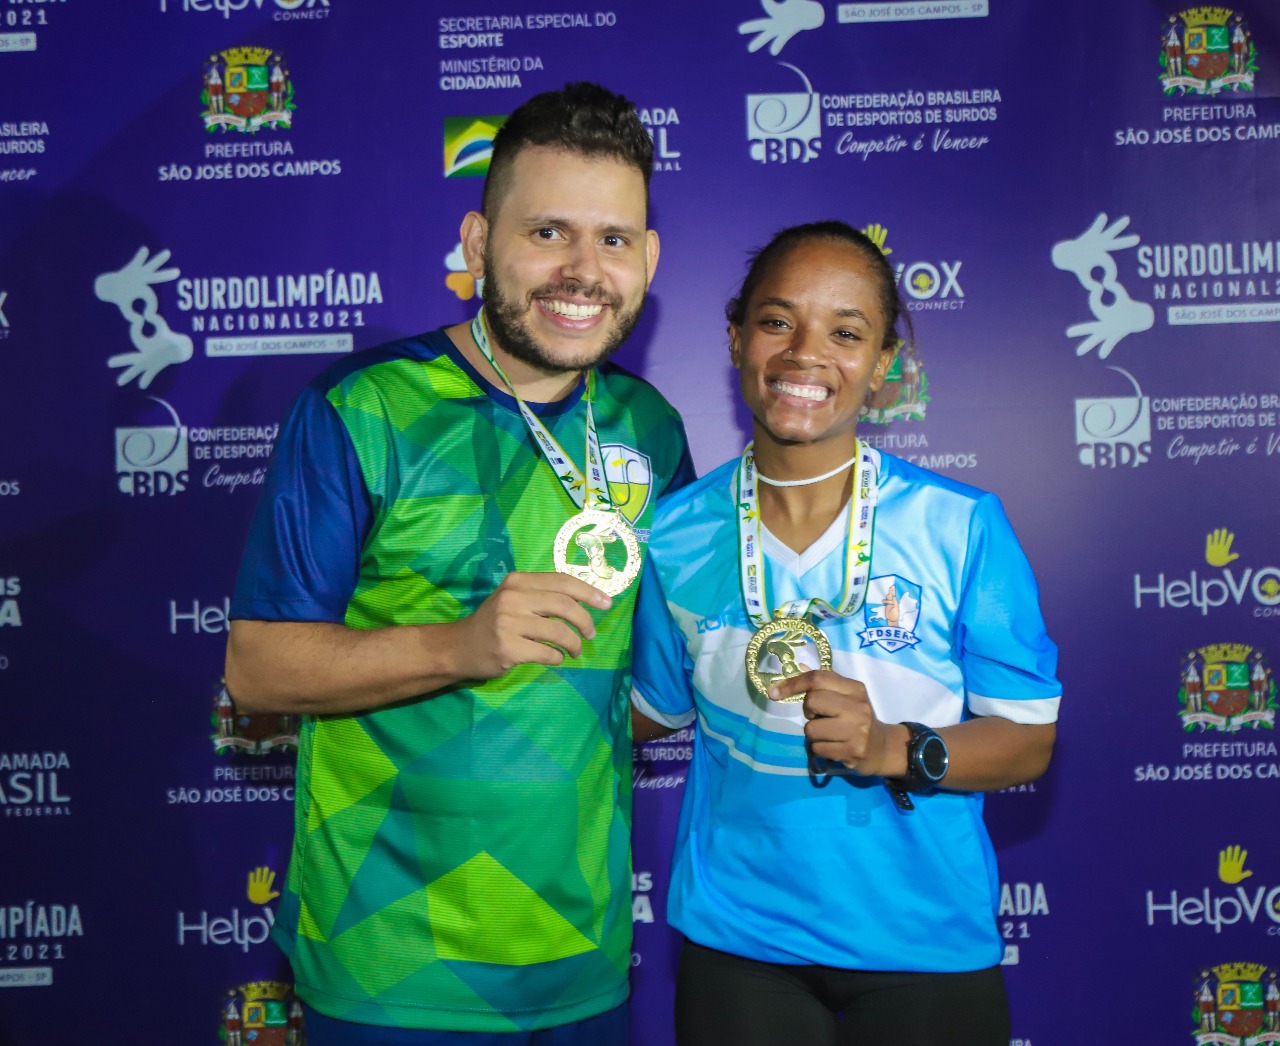 Badminton premia primeiros atletas na Surdolimpíada Nacional 2021